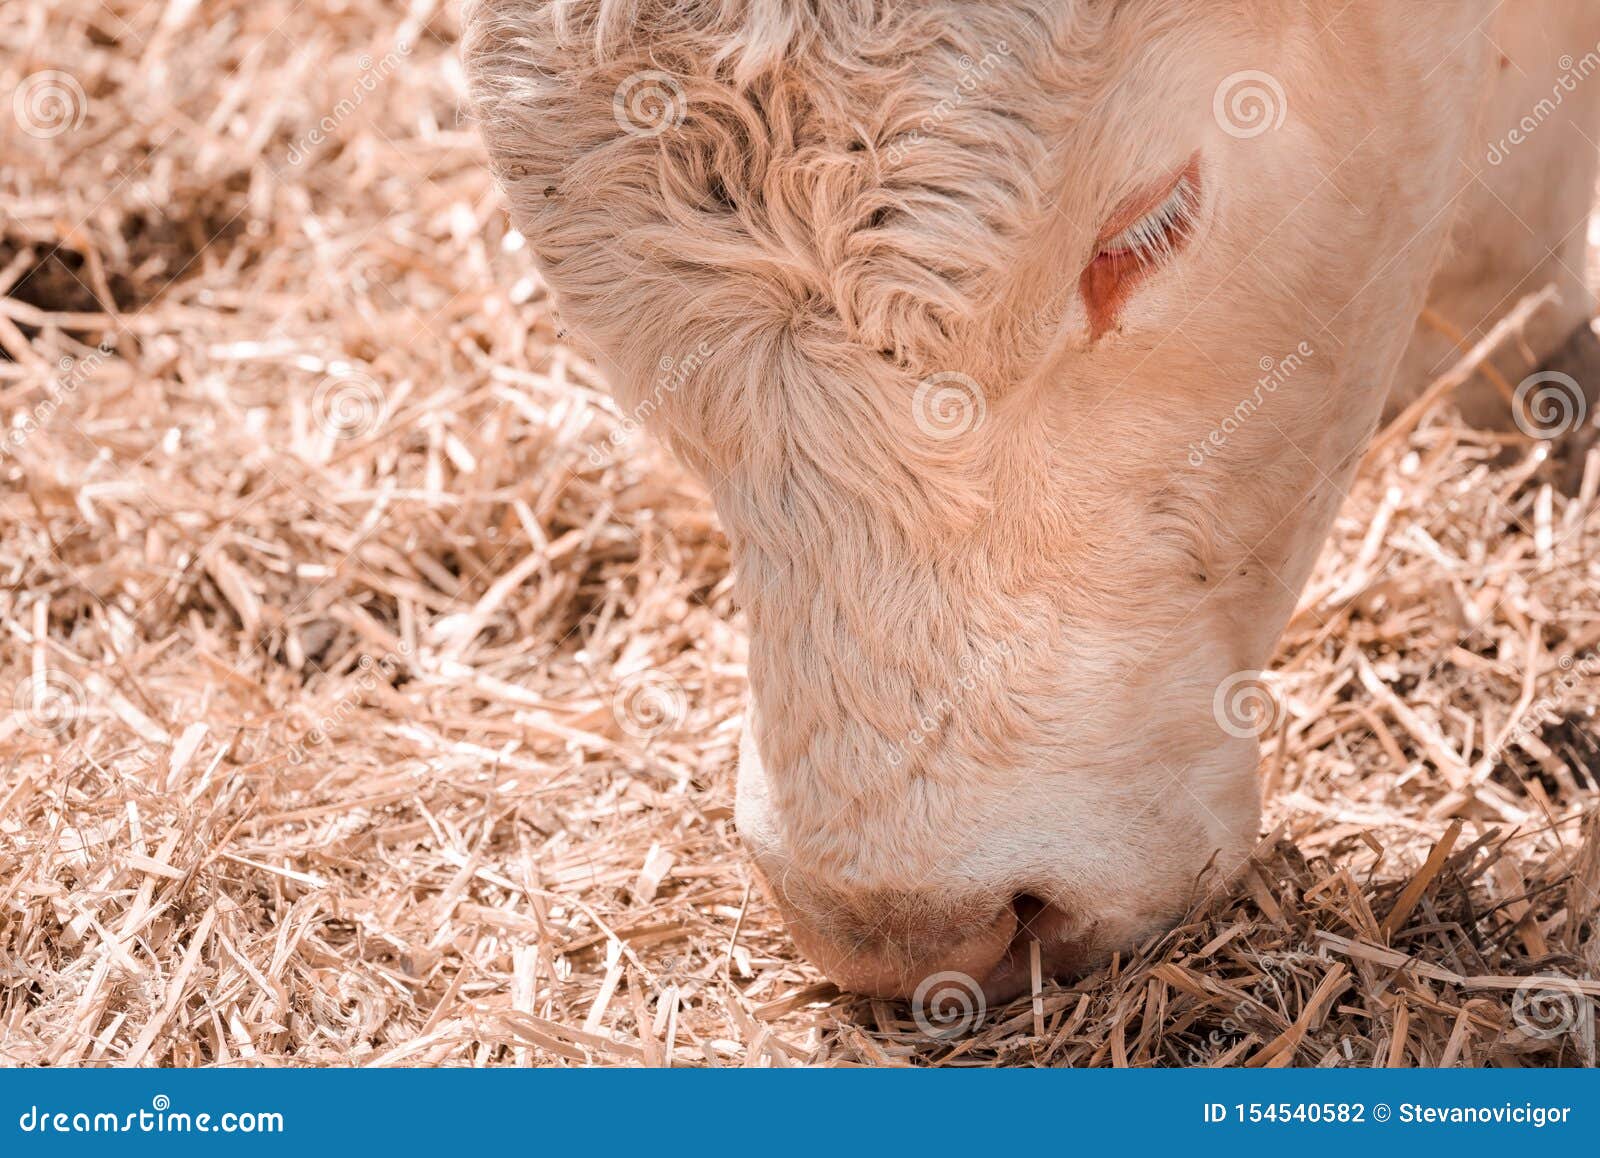 Blonde Holstein Cattle - wide 4